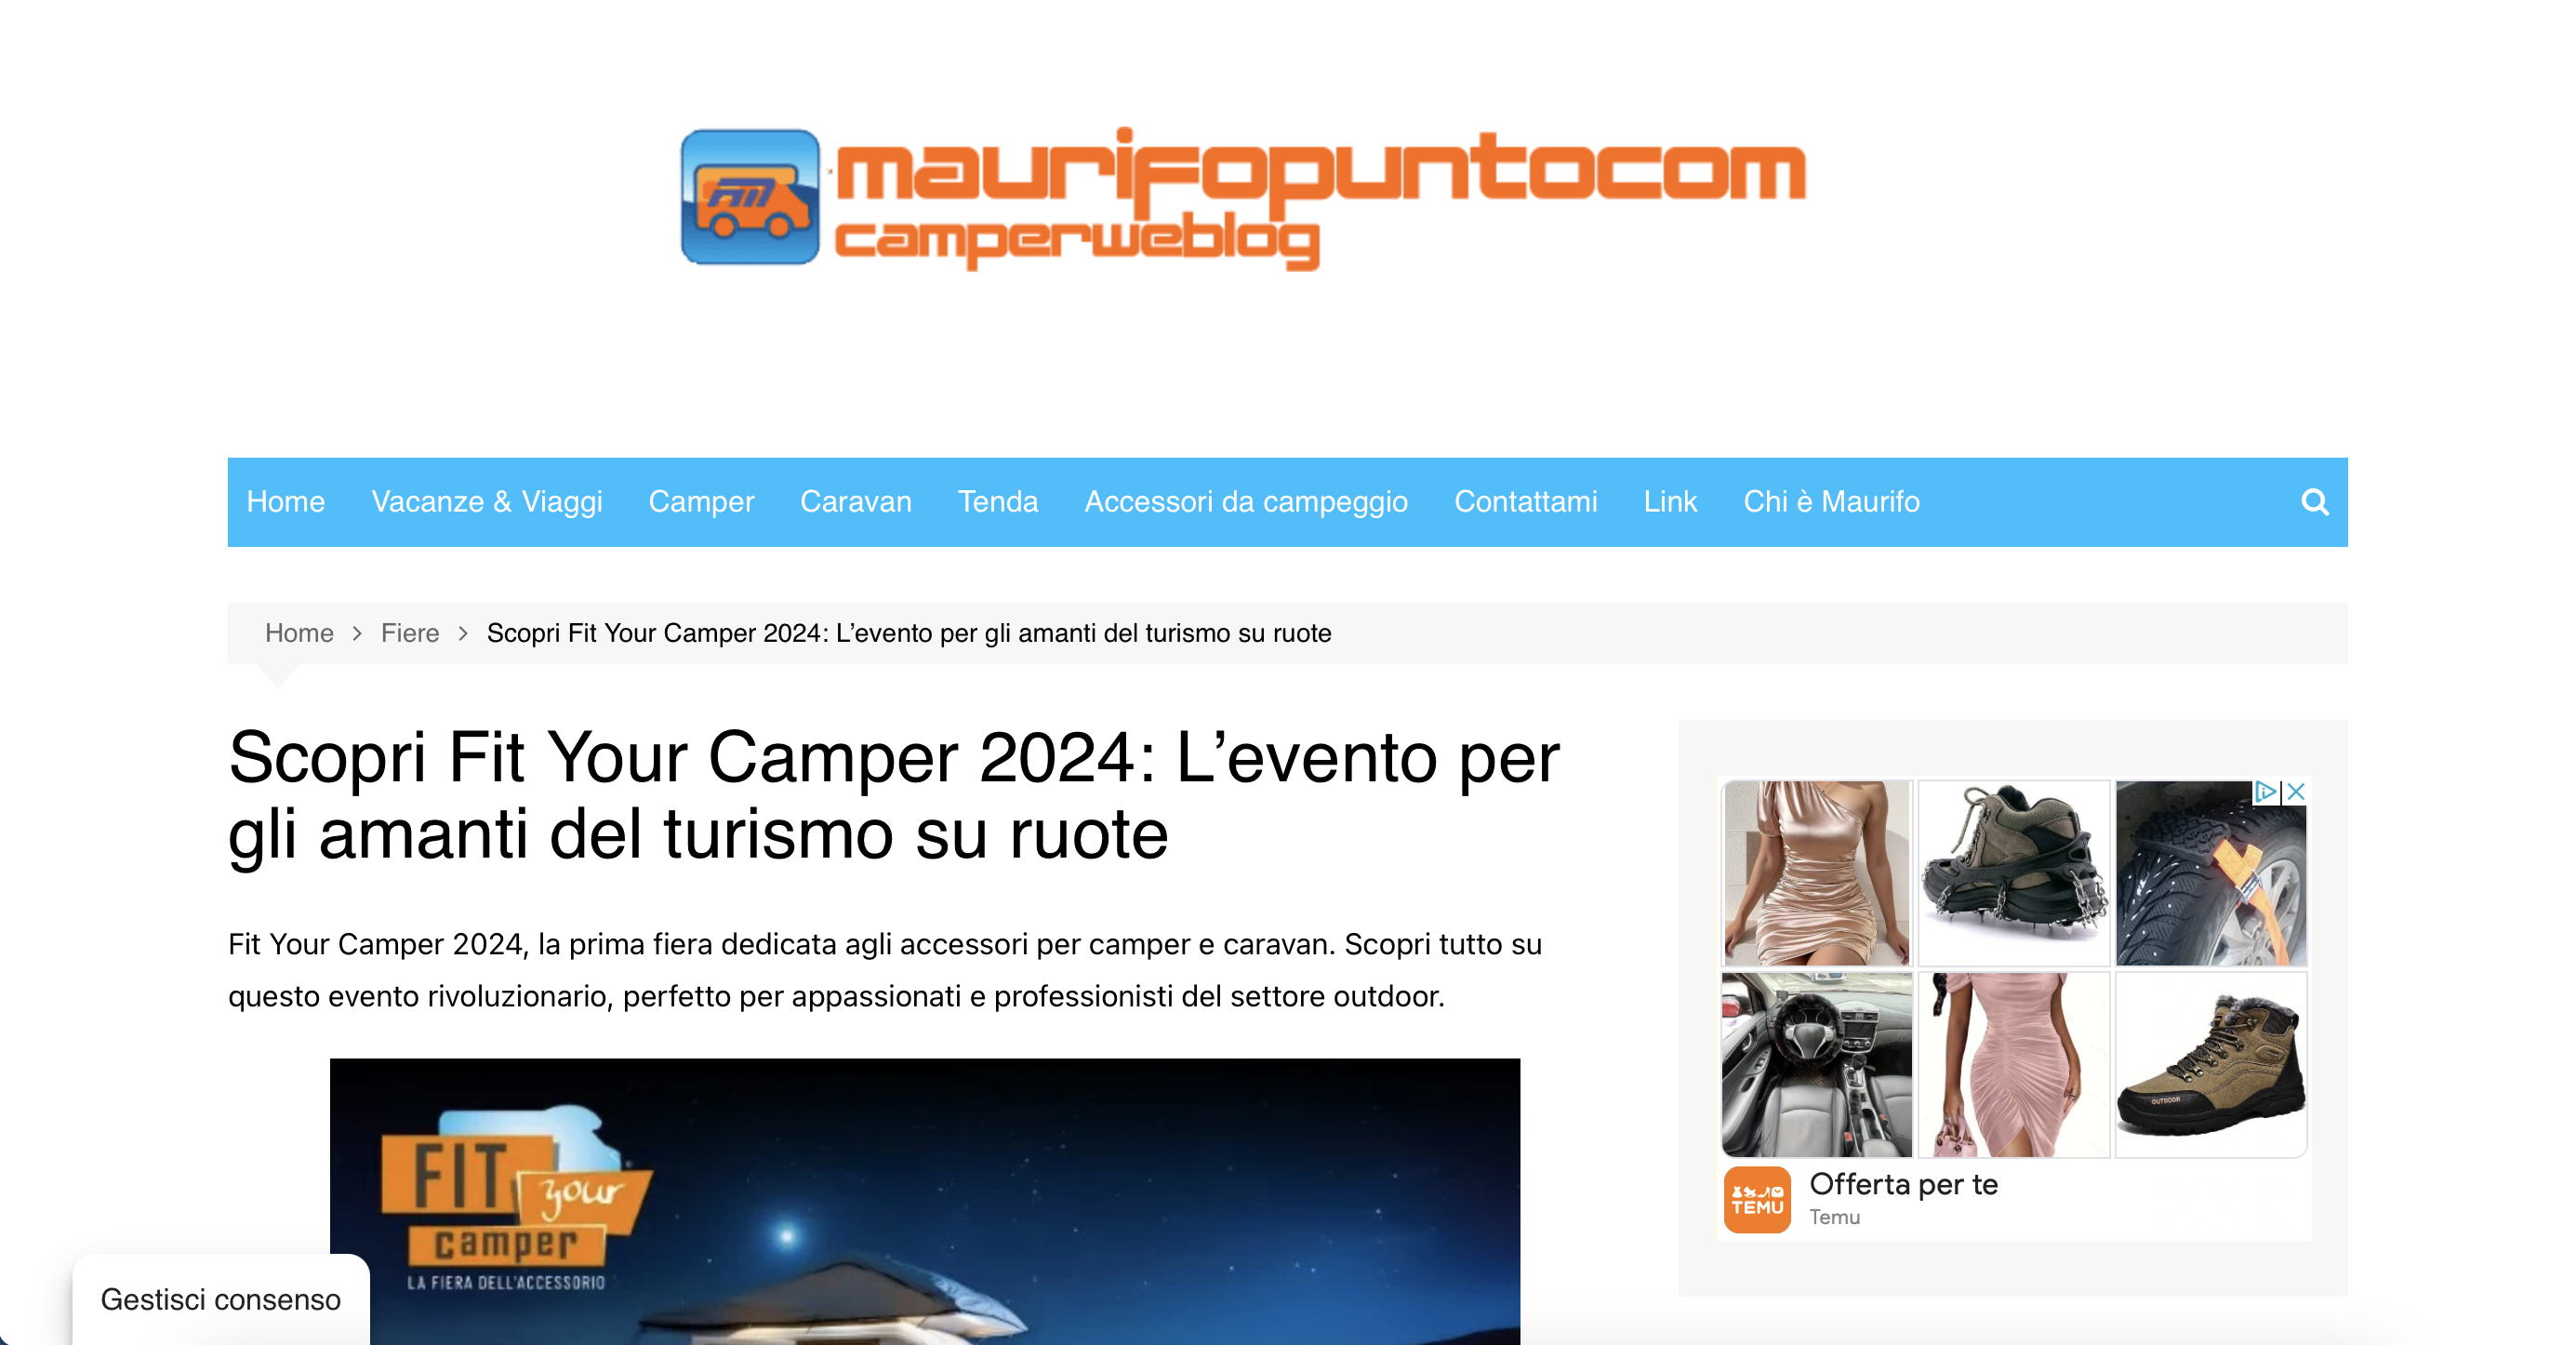 Camperweblog